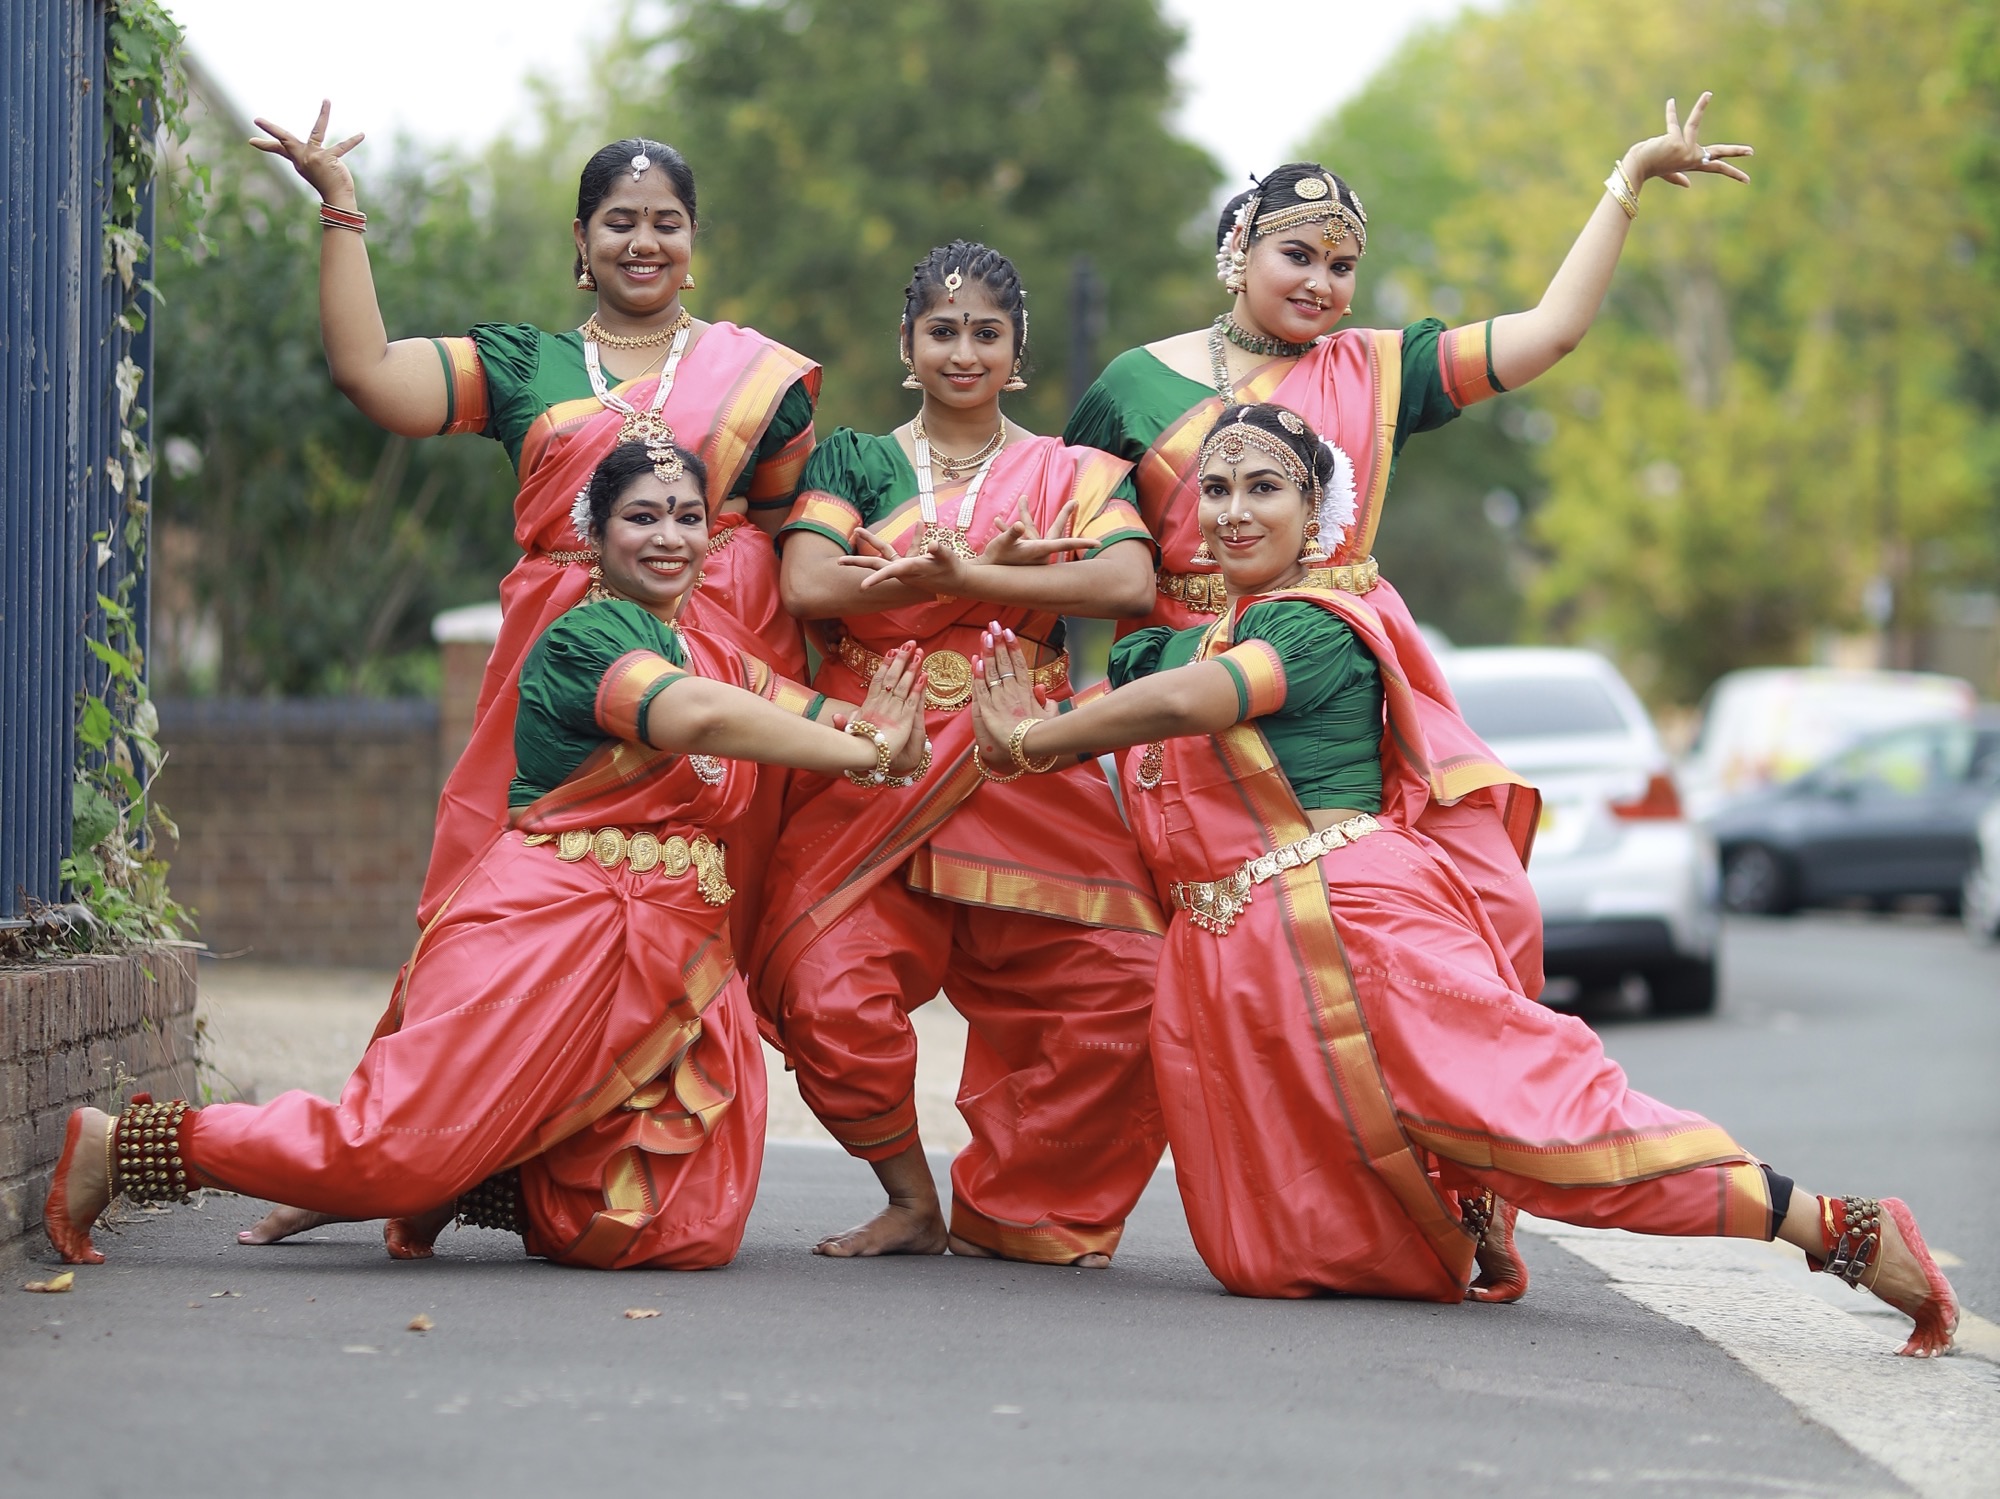 Image: Bharathanatyam dancers. Image copyright and courtesy of M.A.U.K. _ 